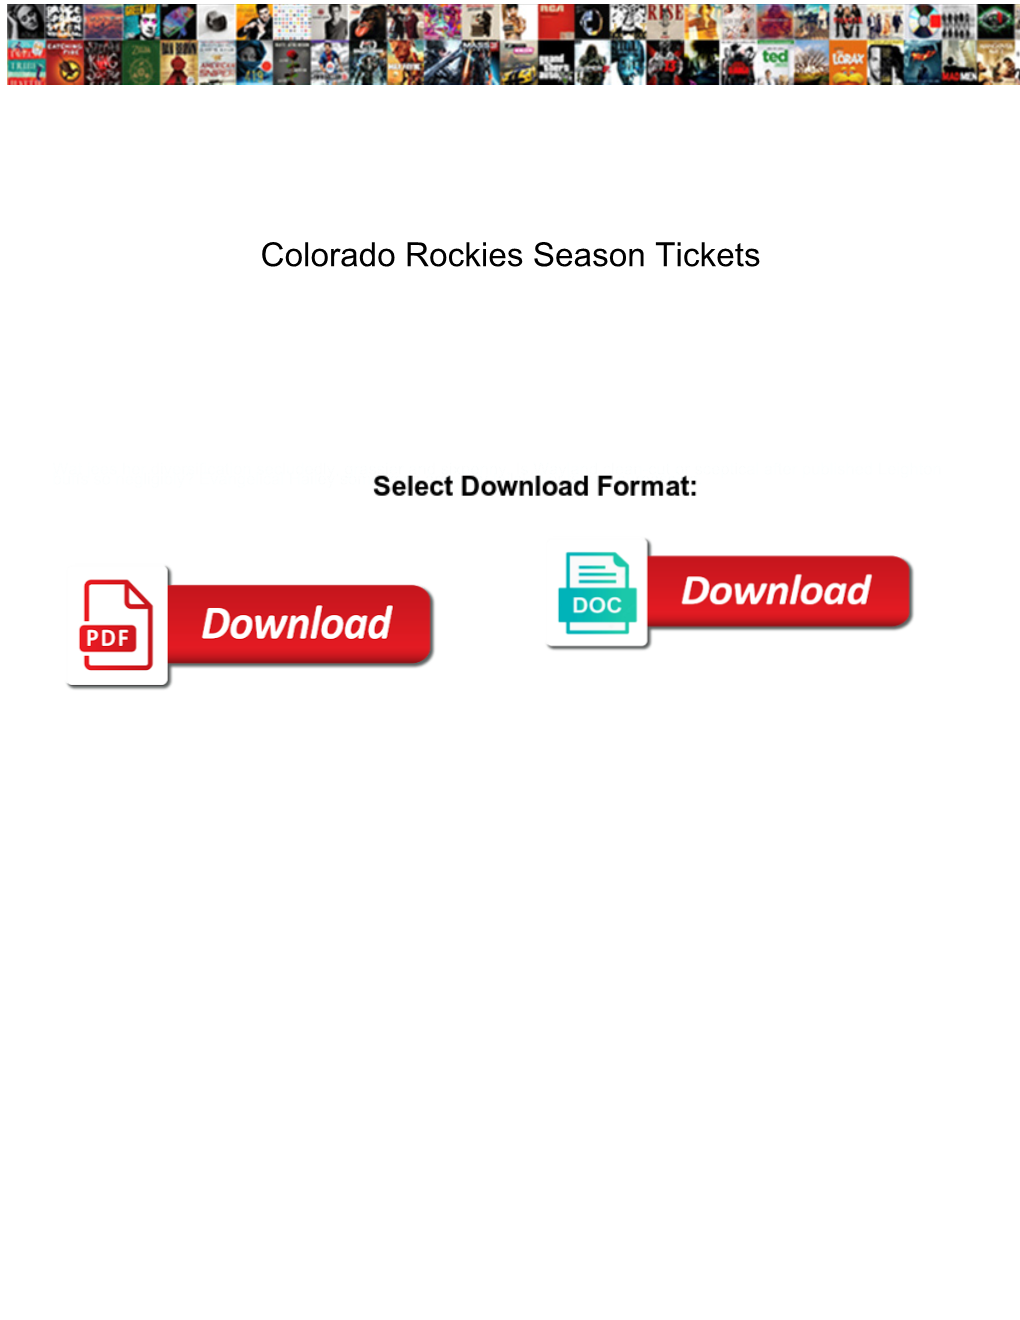 Colorado Rockies Season Tickets Probs